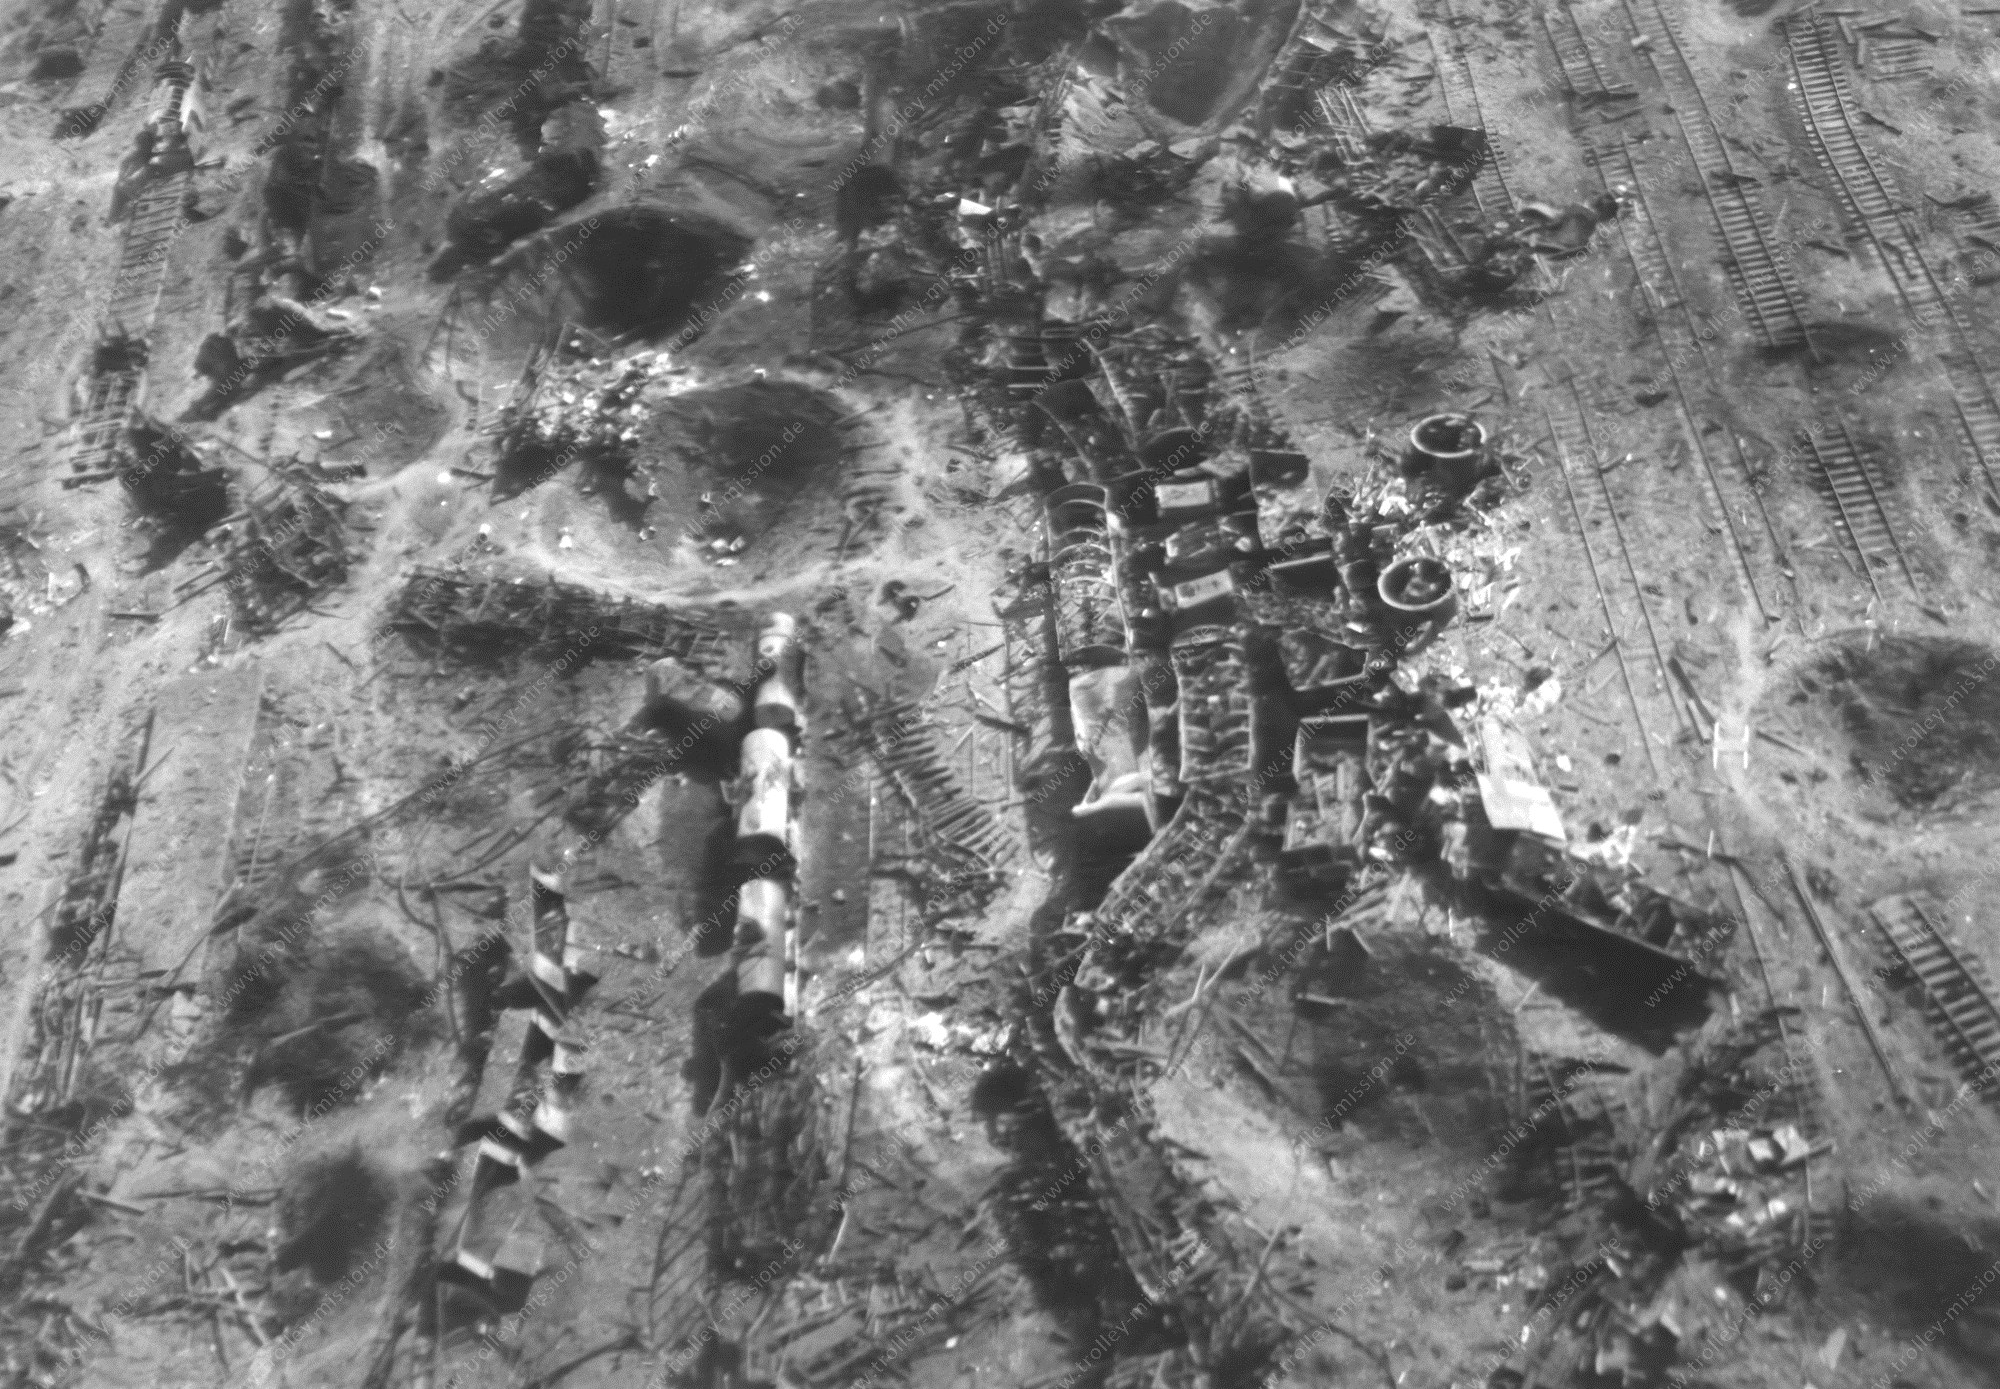 Güterbahnhof Celle 1945 - Luftbild nach den Bombenangriffen im Zweiten Weltkrieg